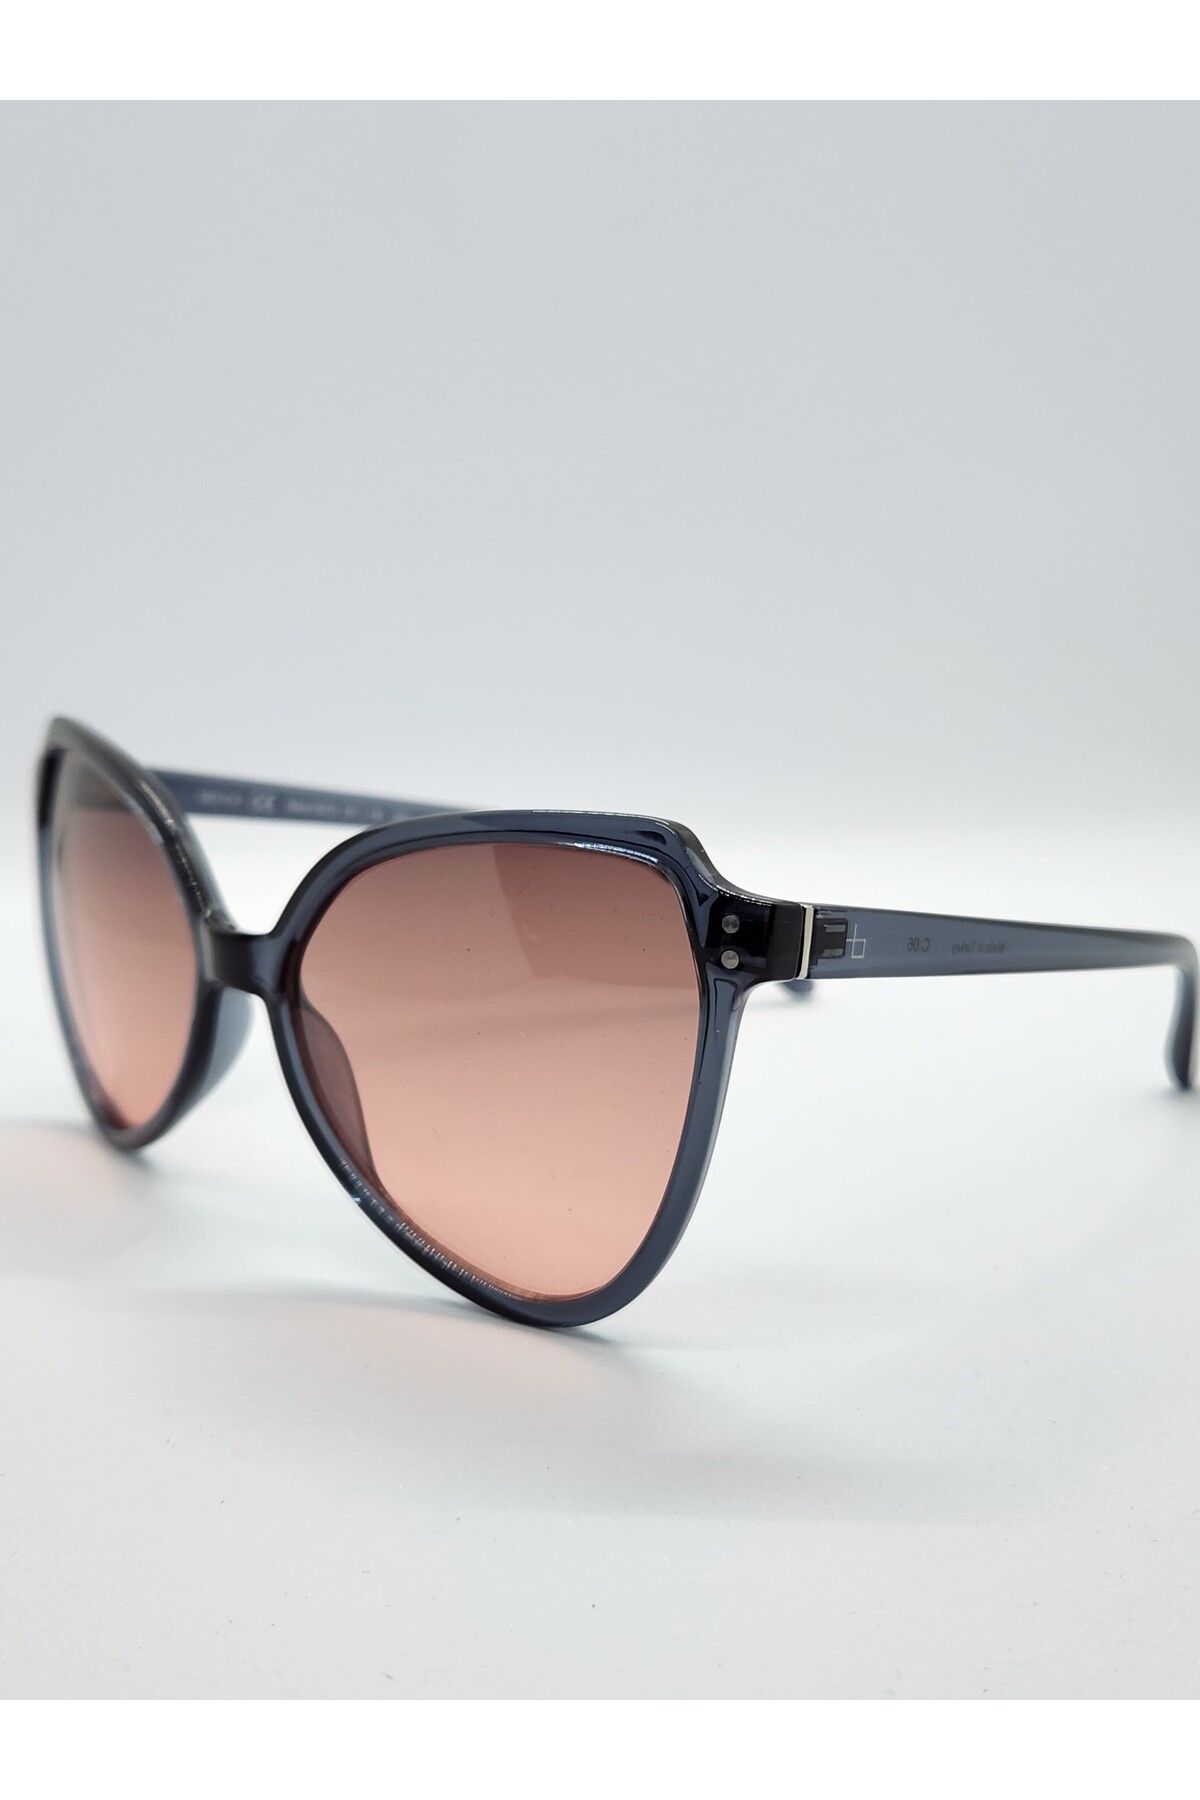 Benx Sunglasses Pembe Camlı Çekik Model Kadın Güneş Gözlüğü